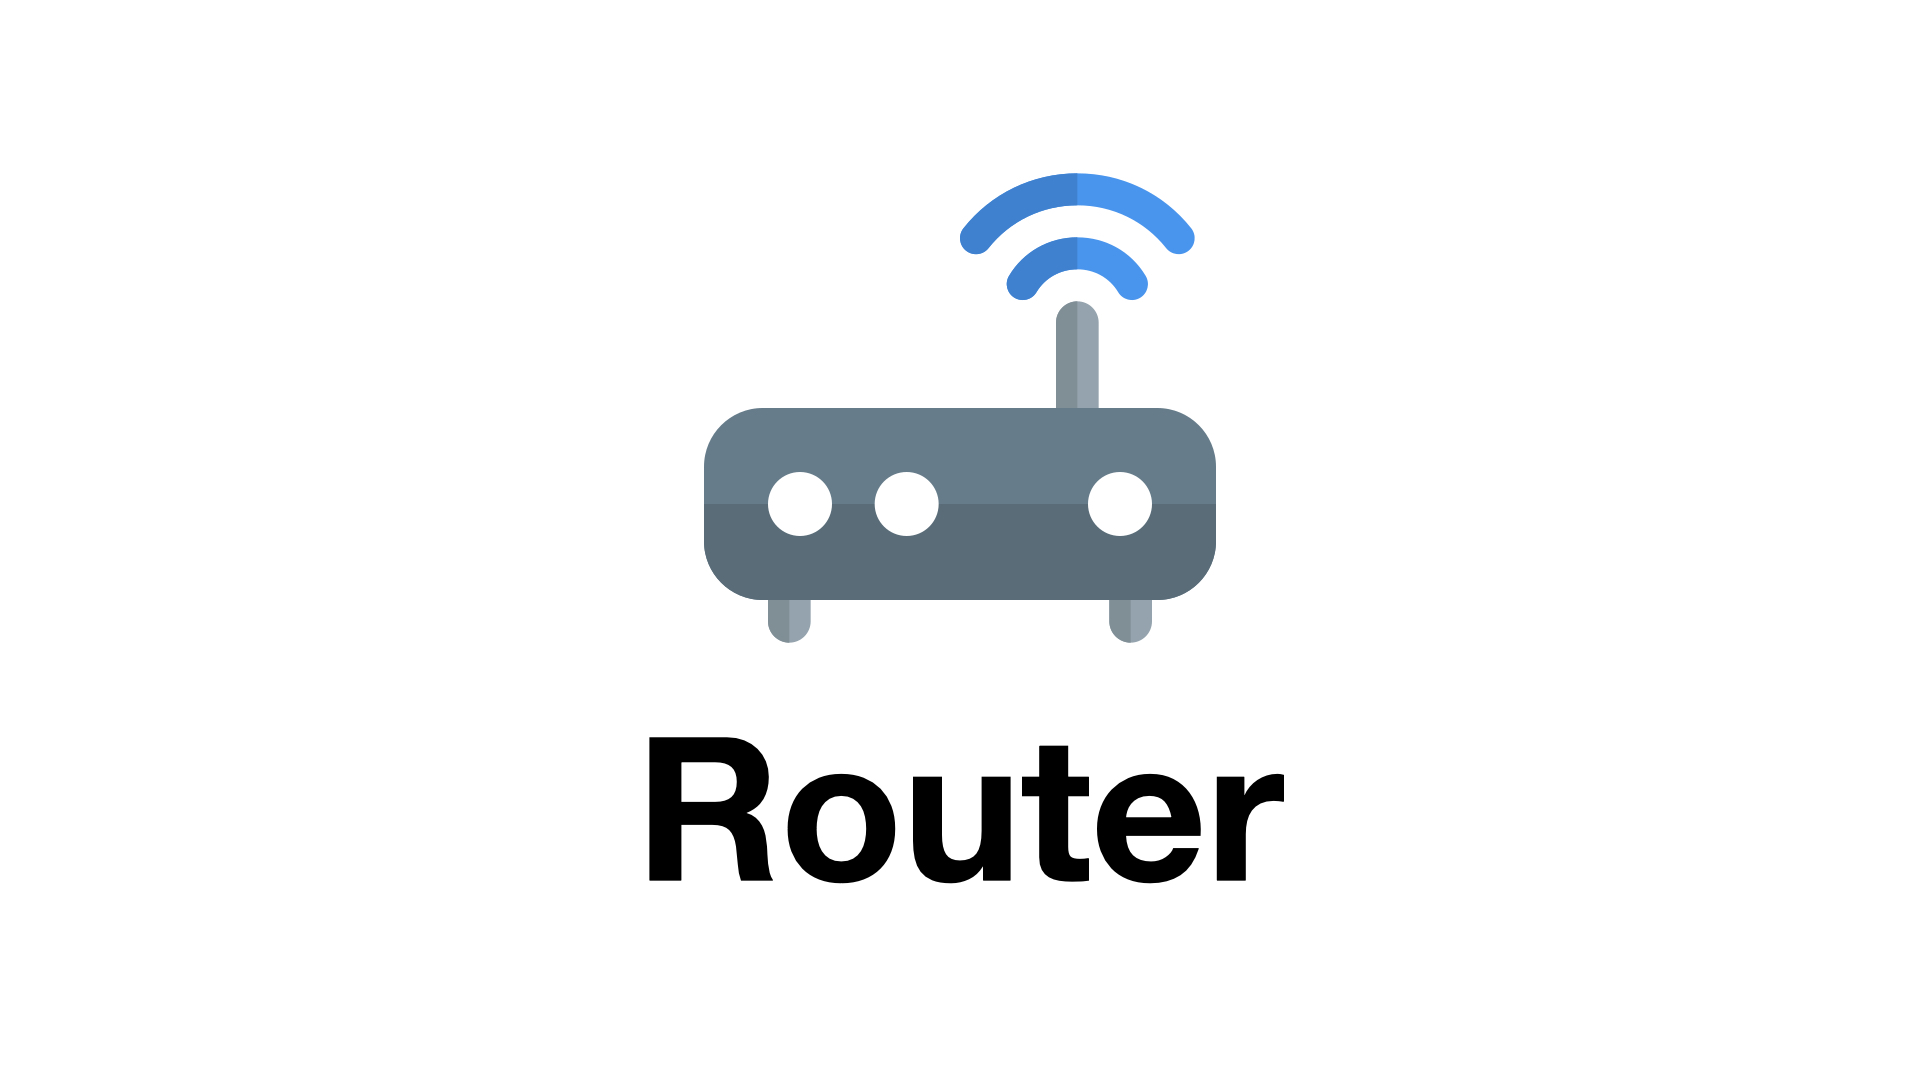 Network] 라우터 (Router) 의 동작 방식